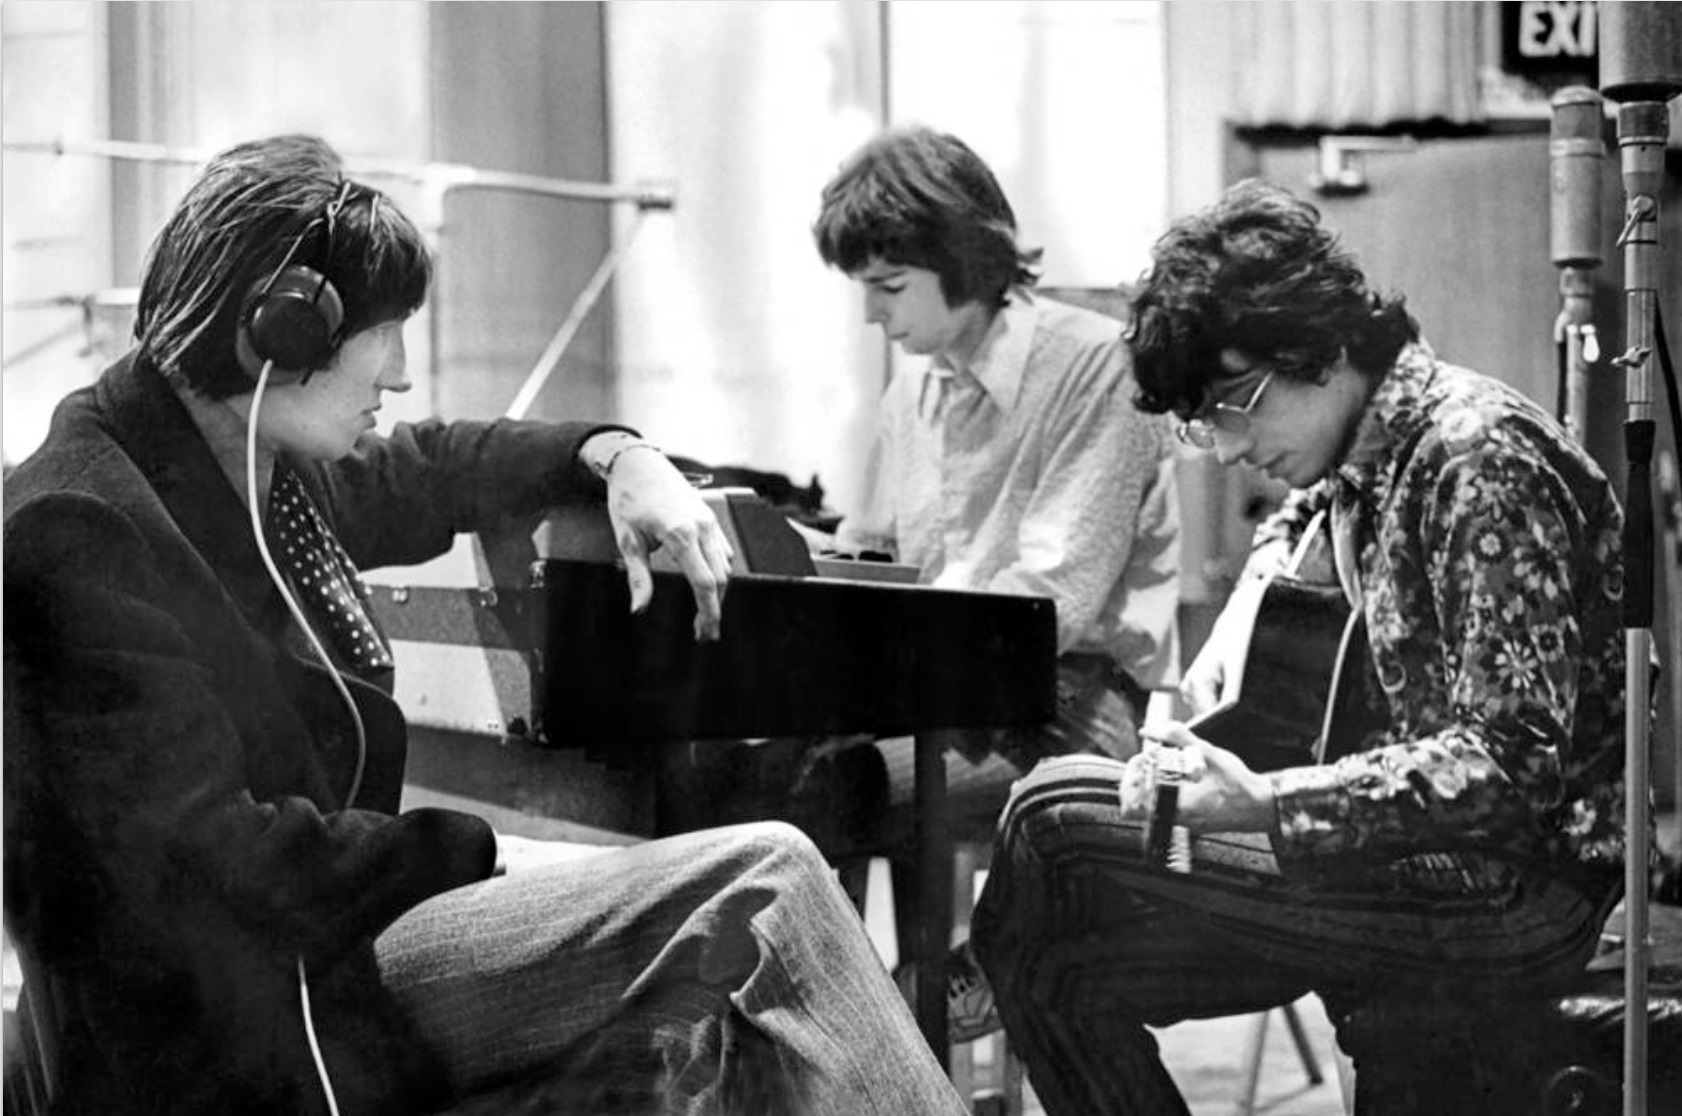 1968 Pink Floyd Abbey Road Studios with Syd Barrett